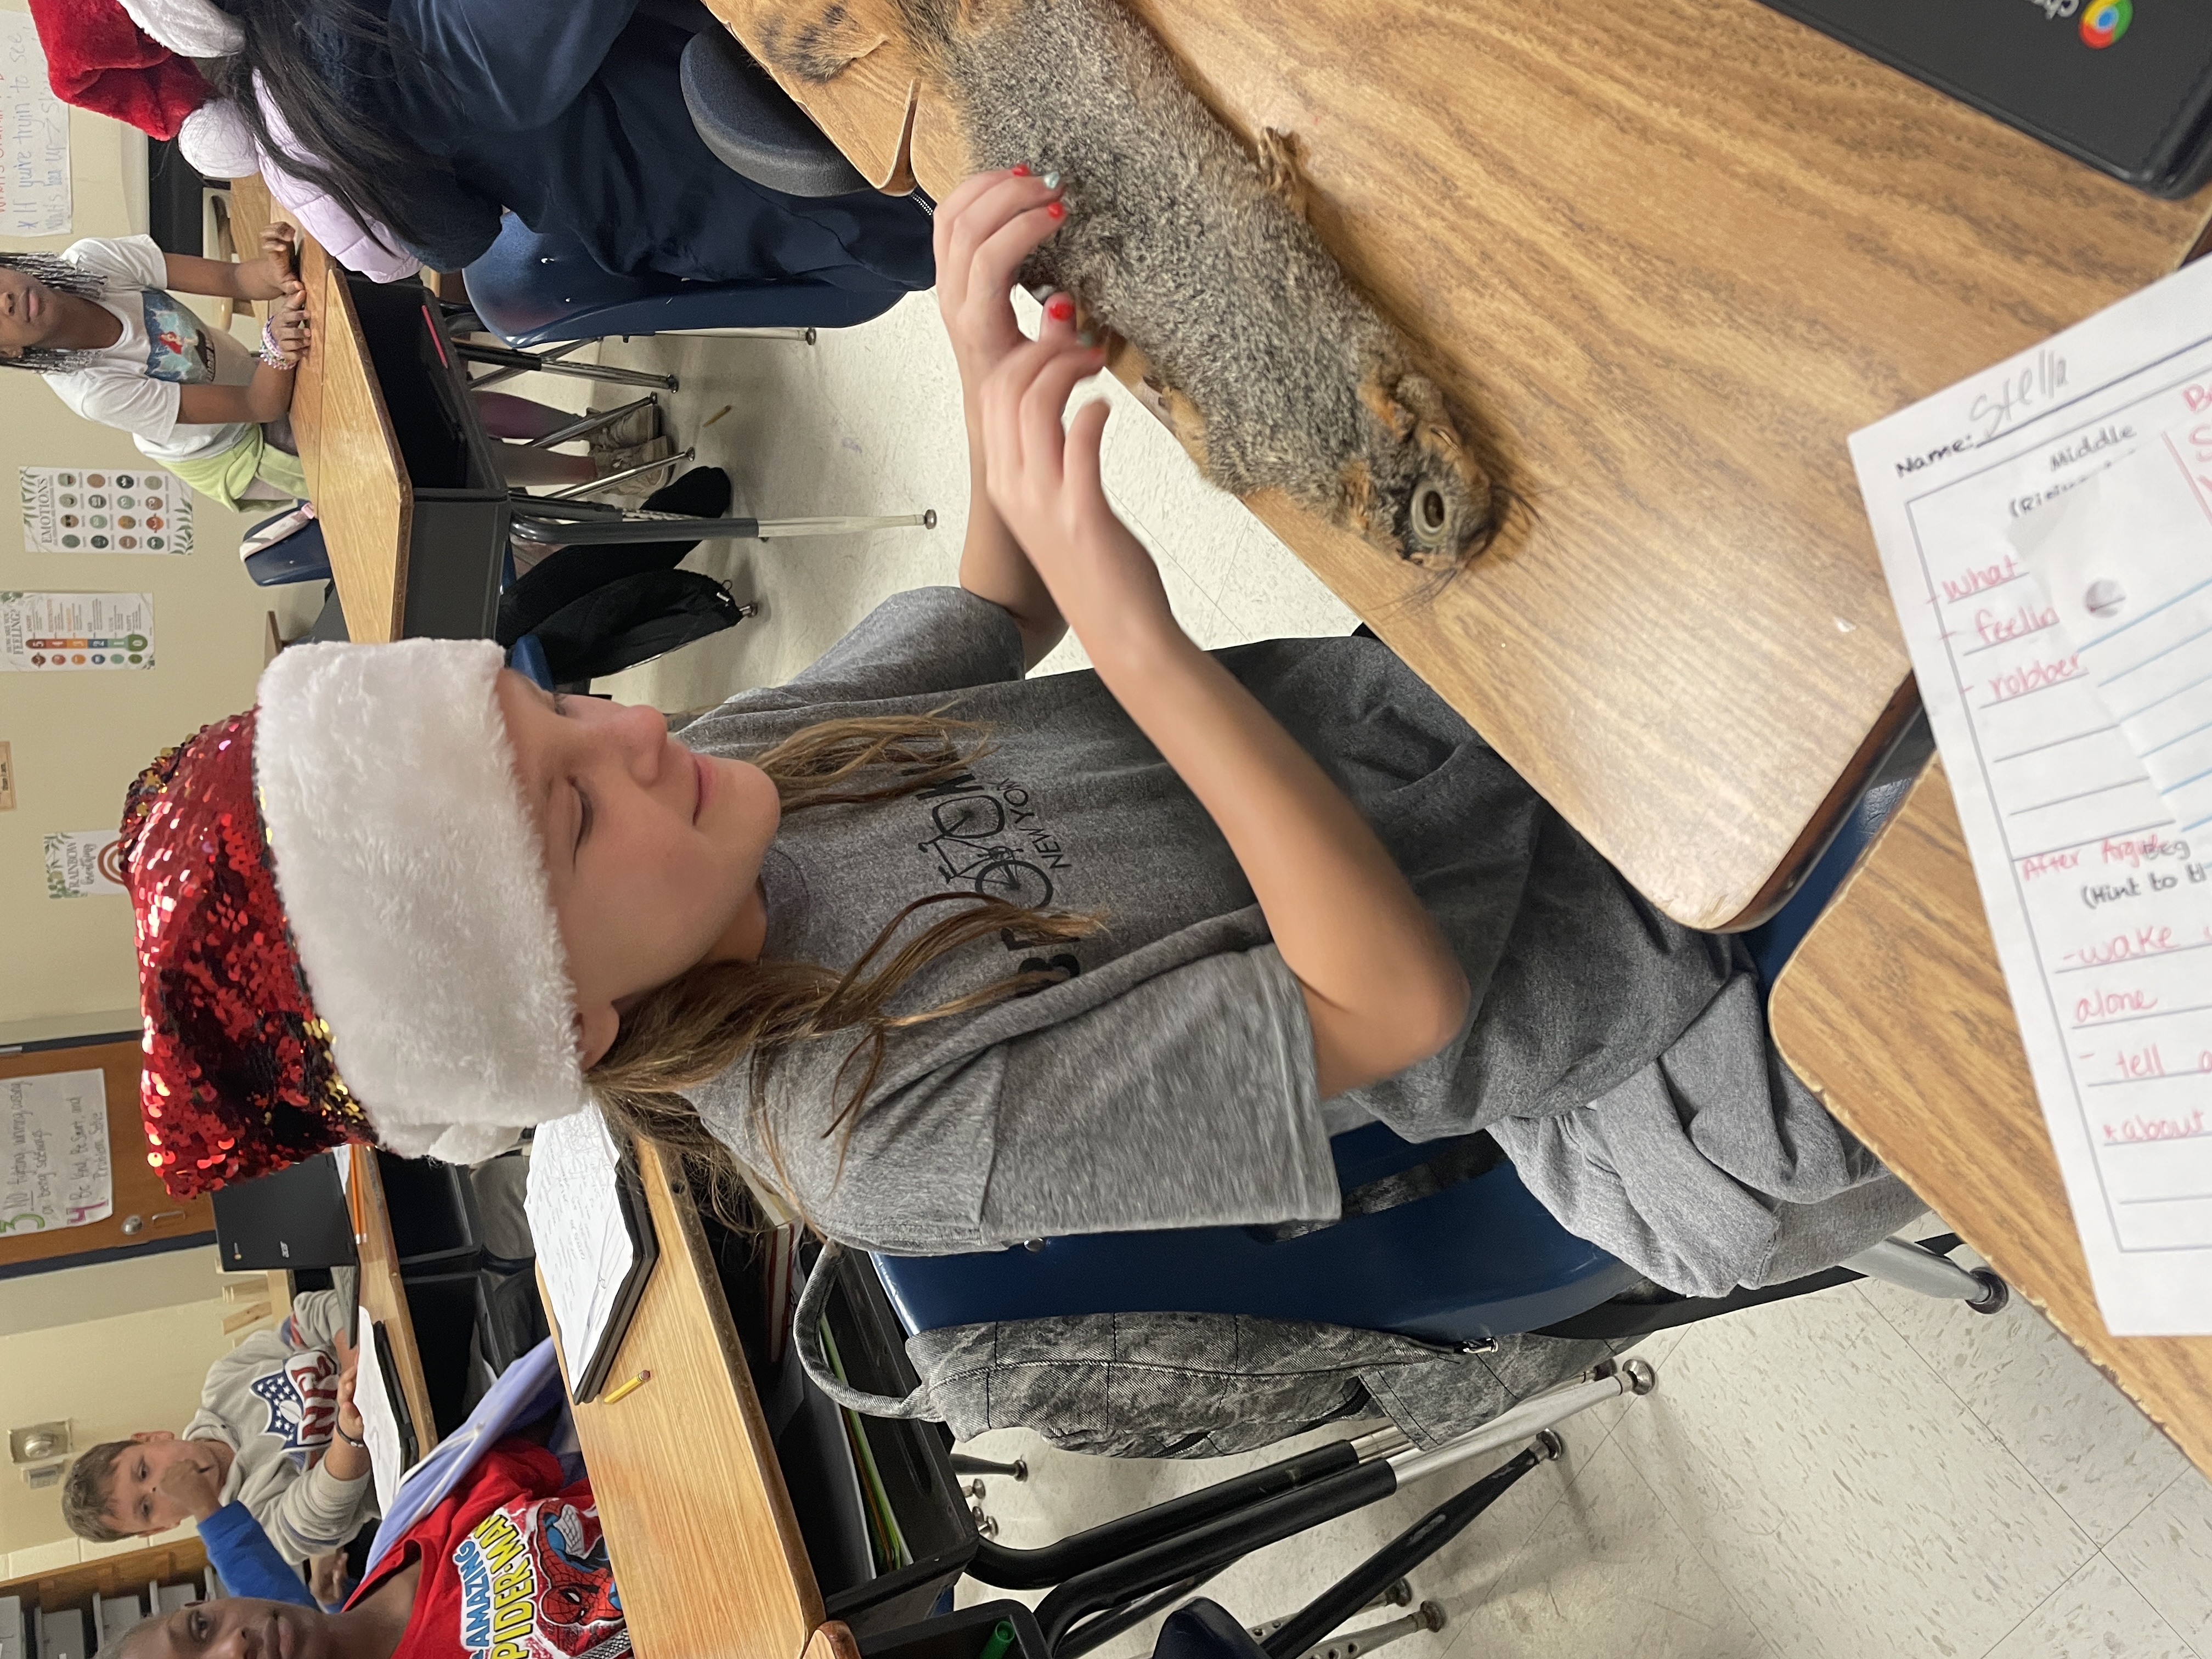 Students exploring furs